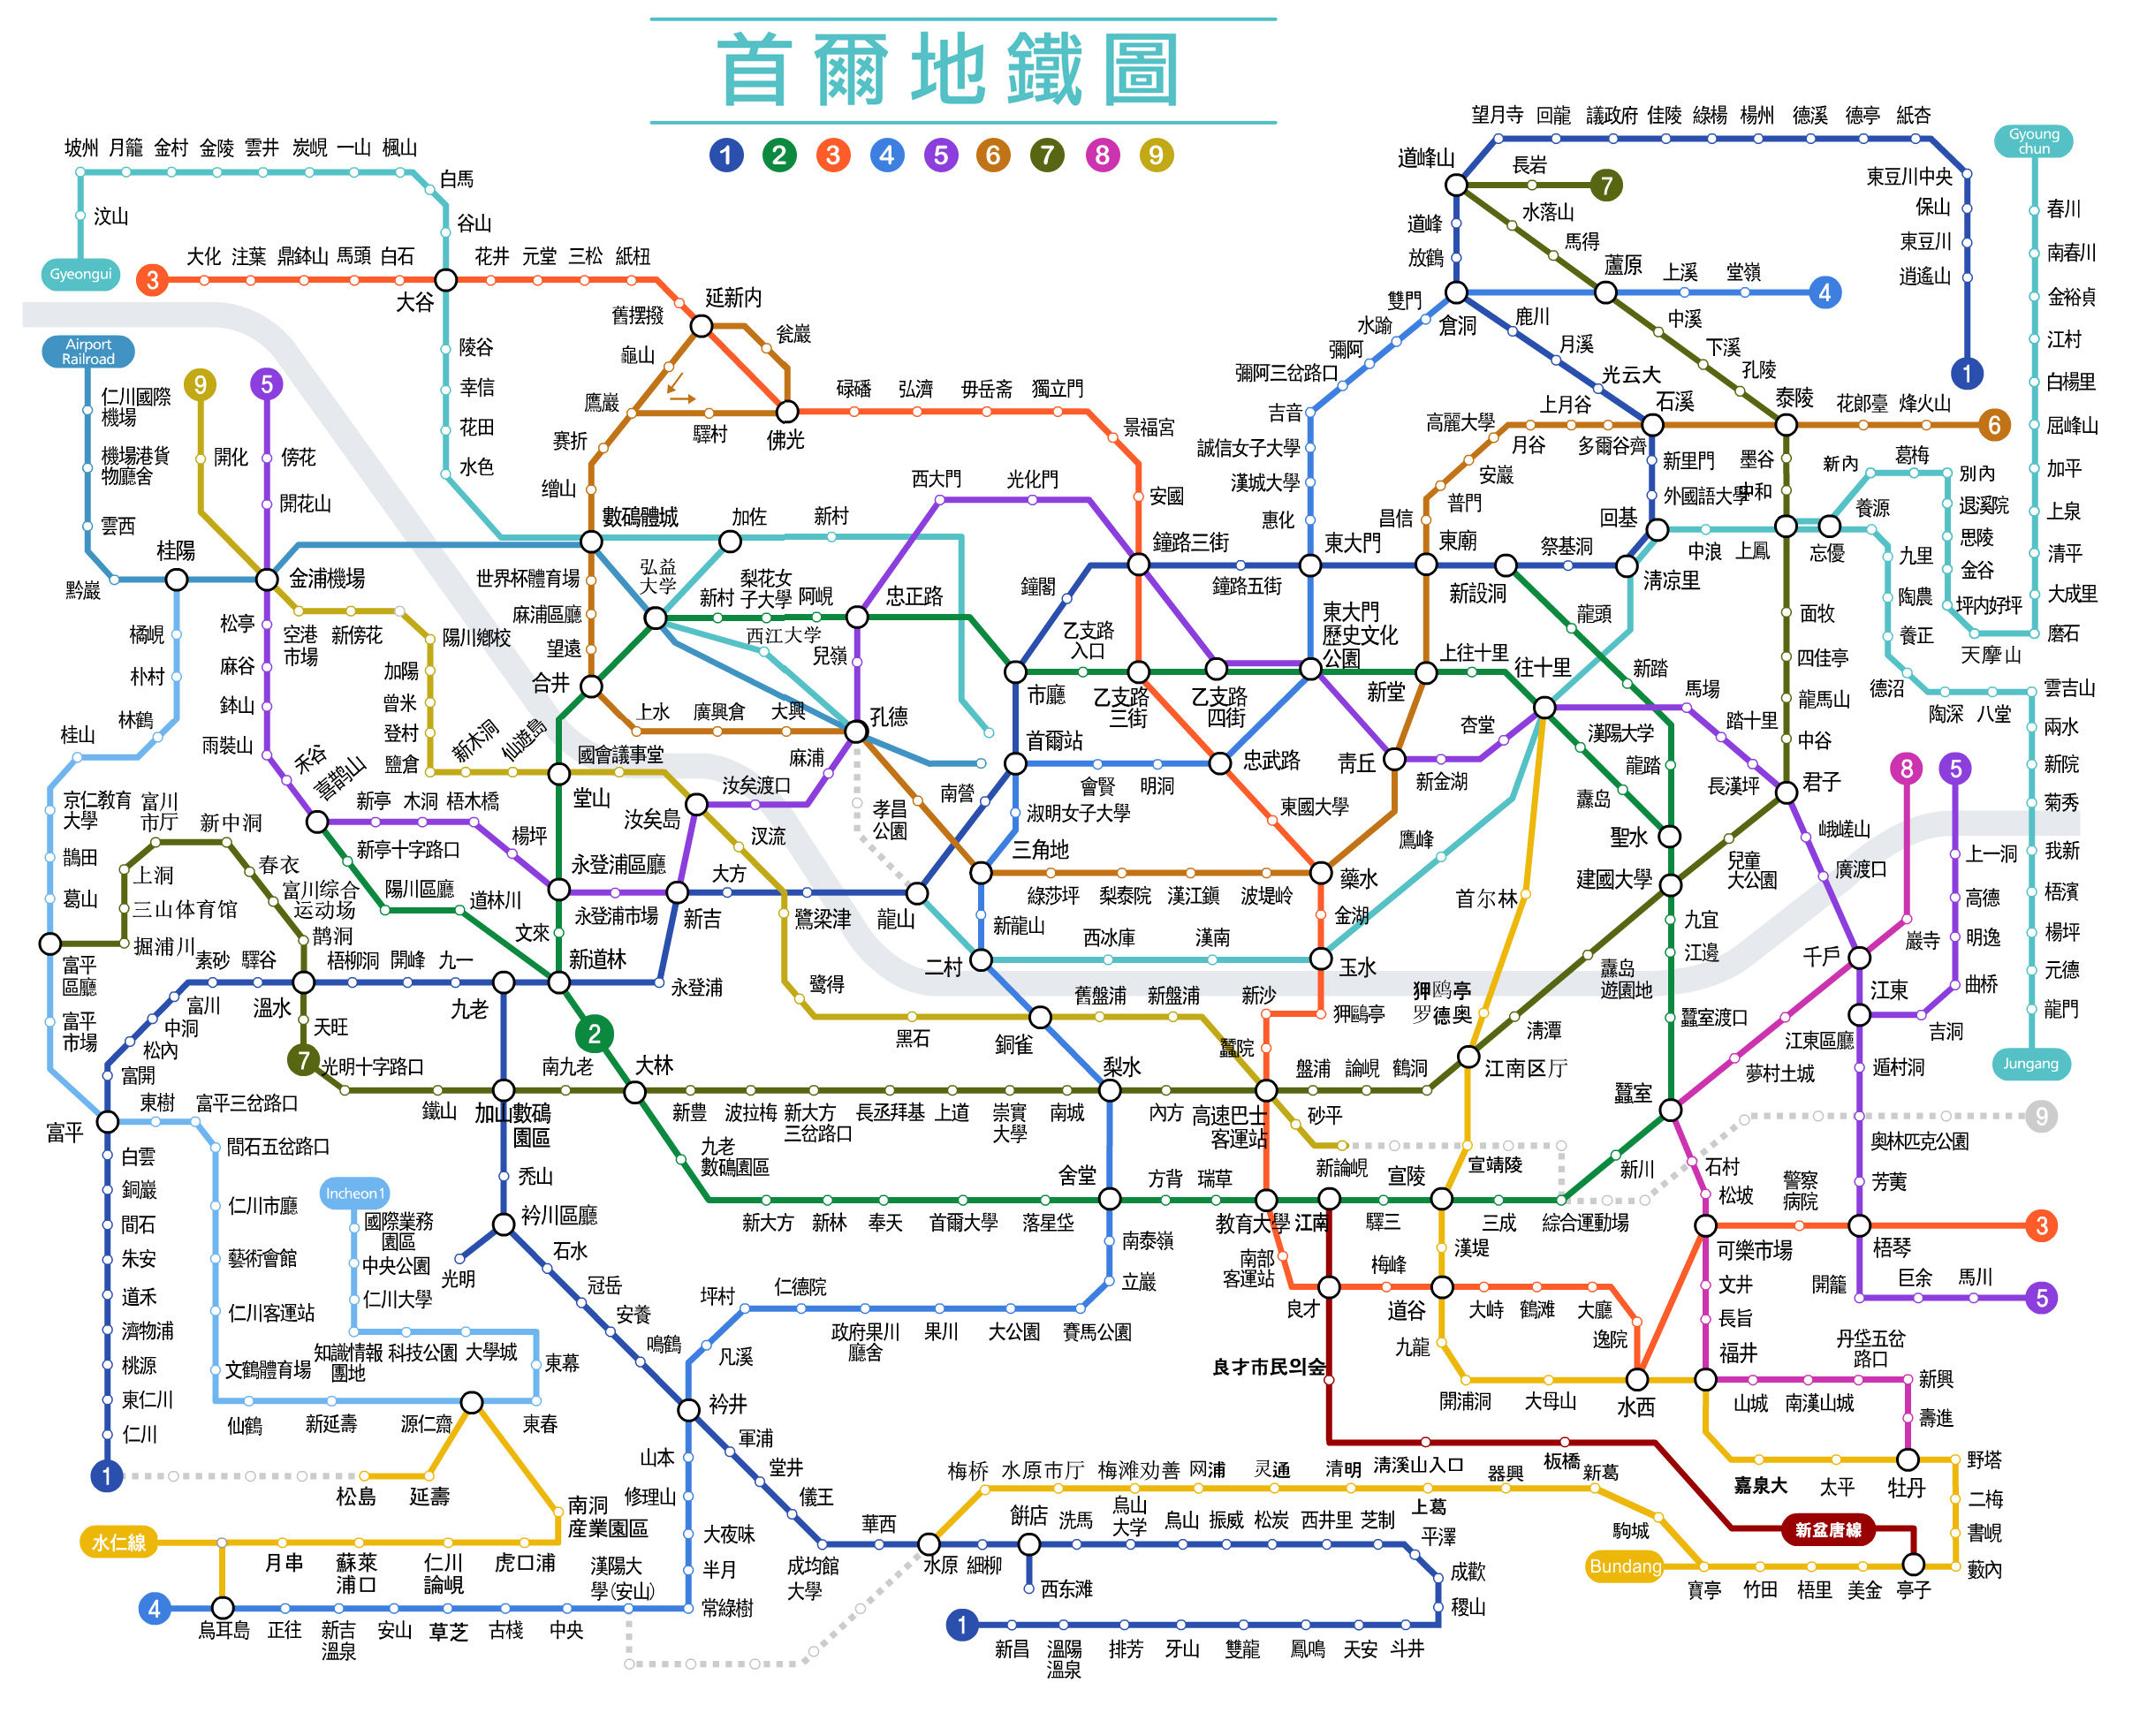 [游记]韩国地铁路线图,票价查询